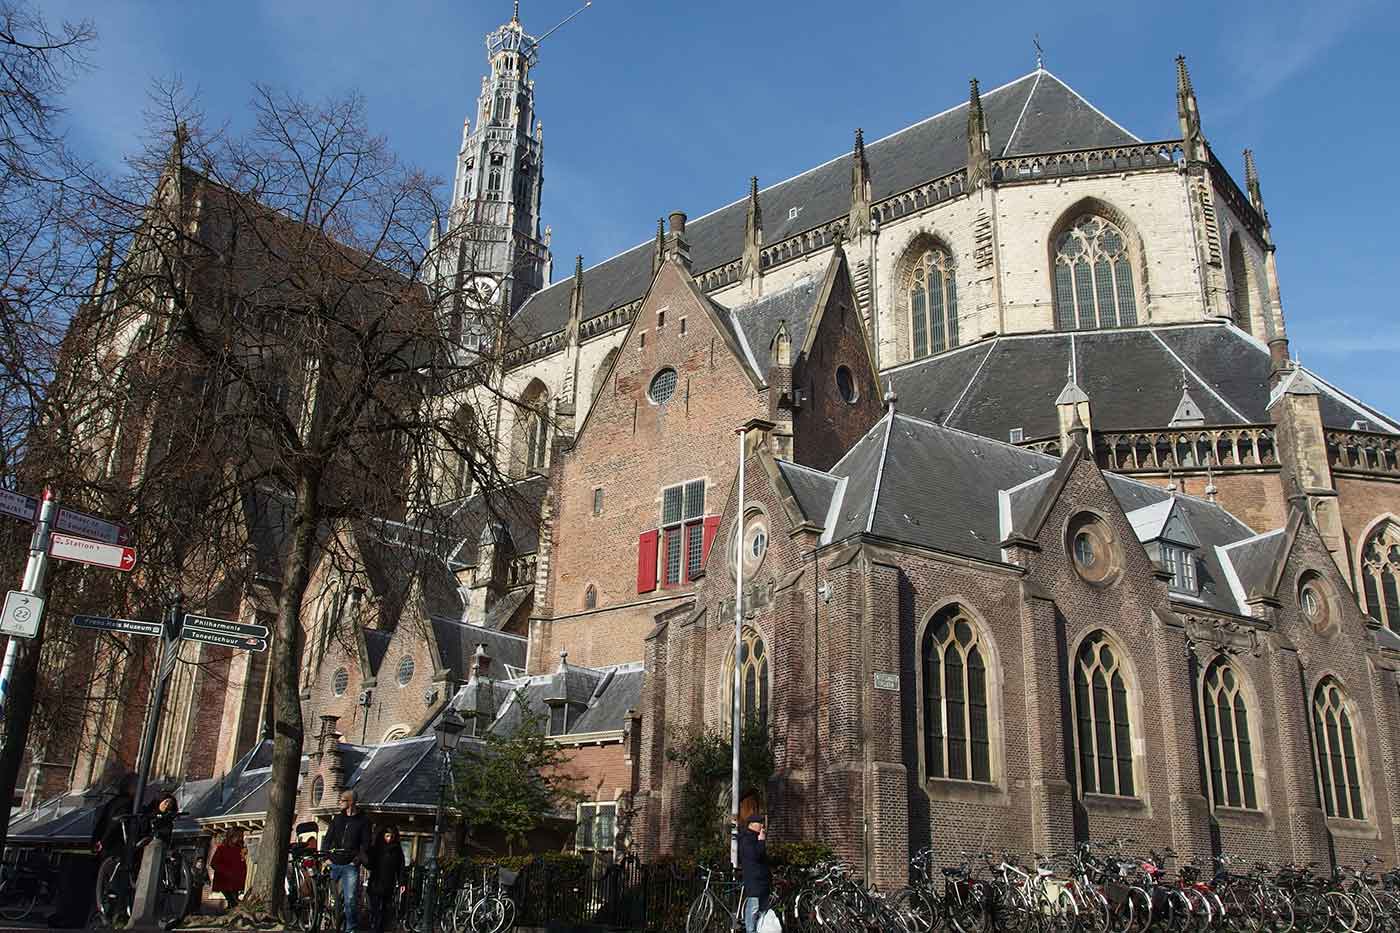 The Grote Kerk